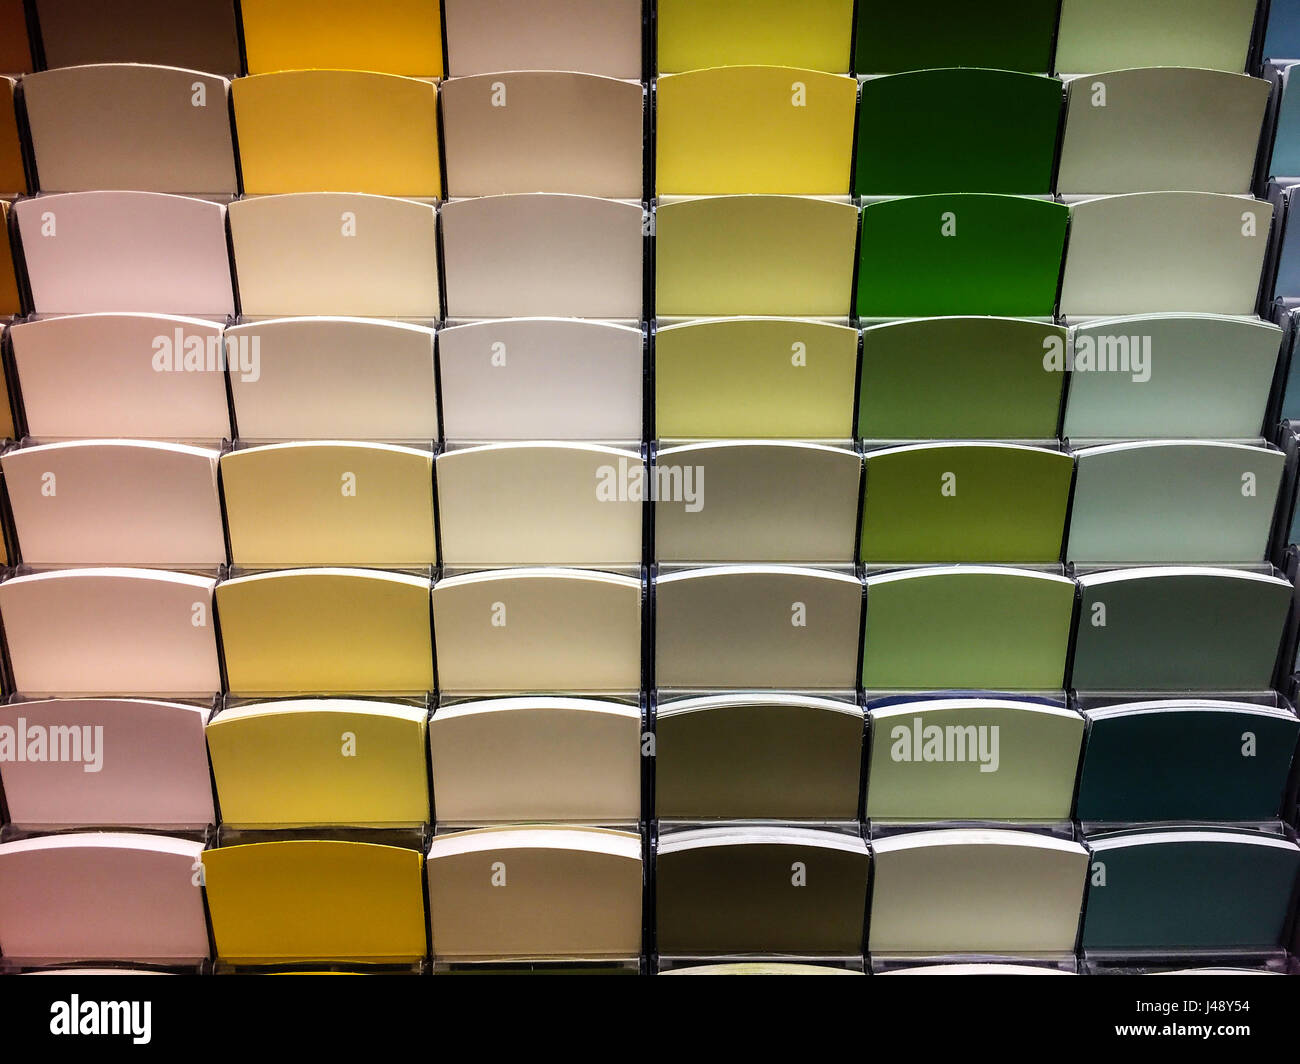 Farbmuster store Proben. Rainbow probe Farben Katalog. Stockfoto